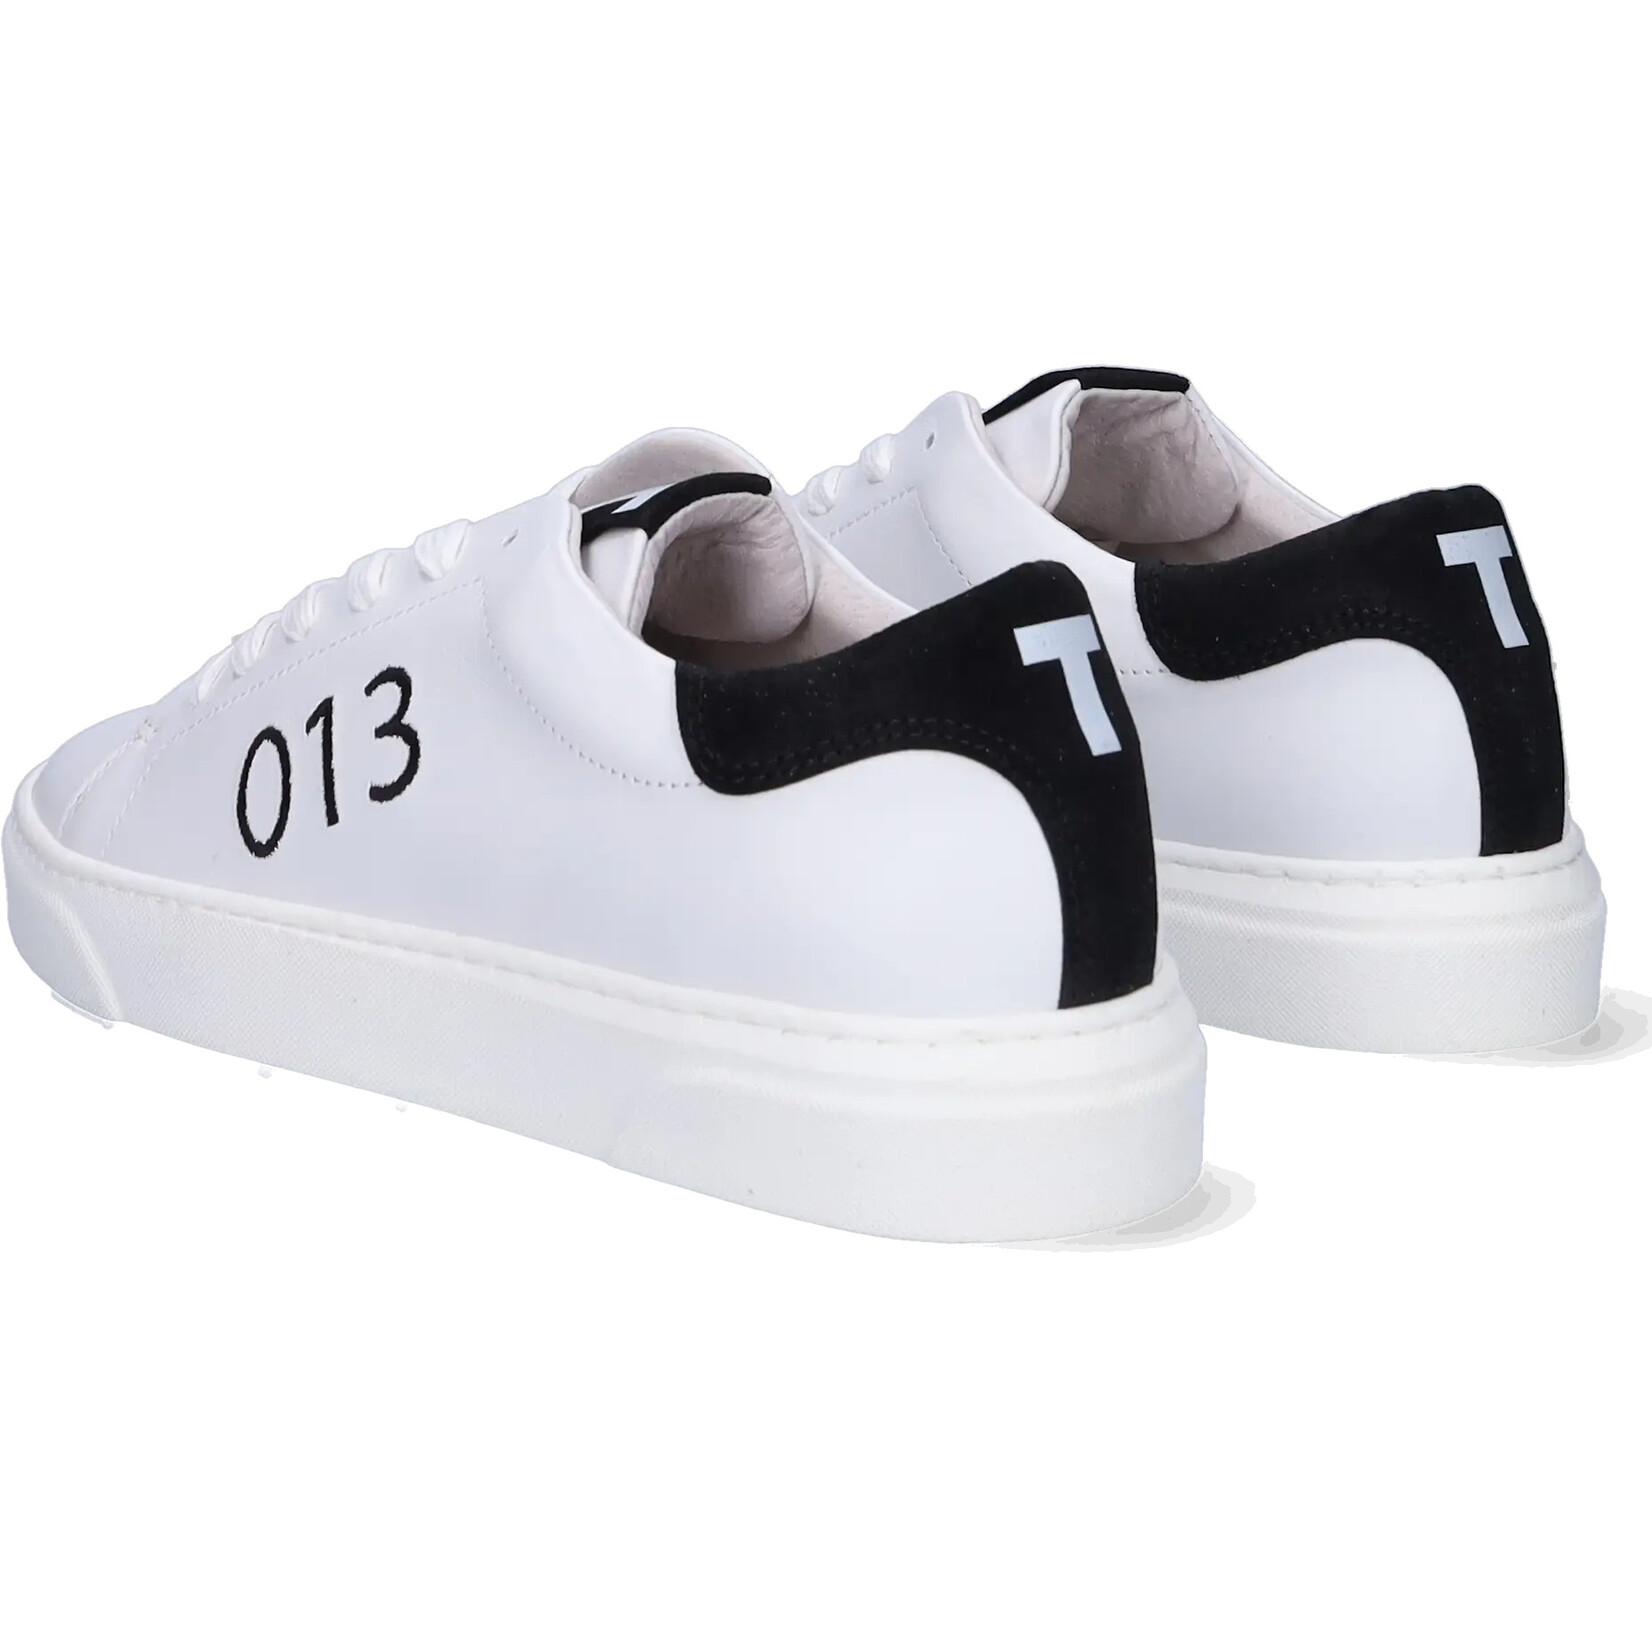 JJ Footwear Tilburg - White/Black